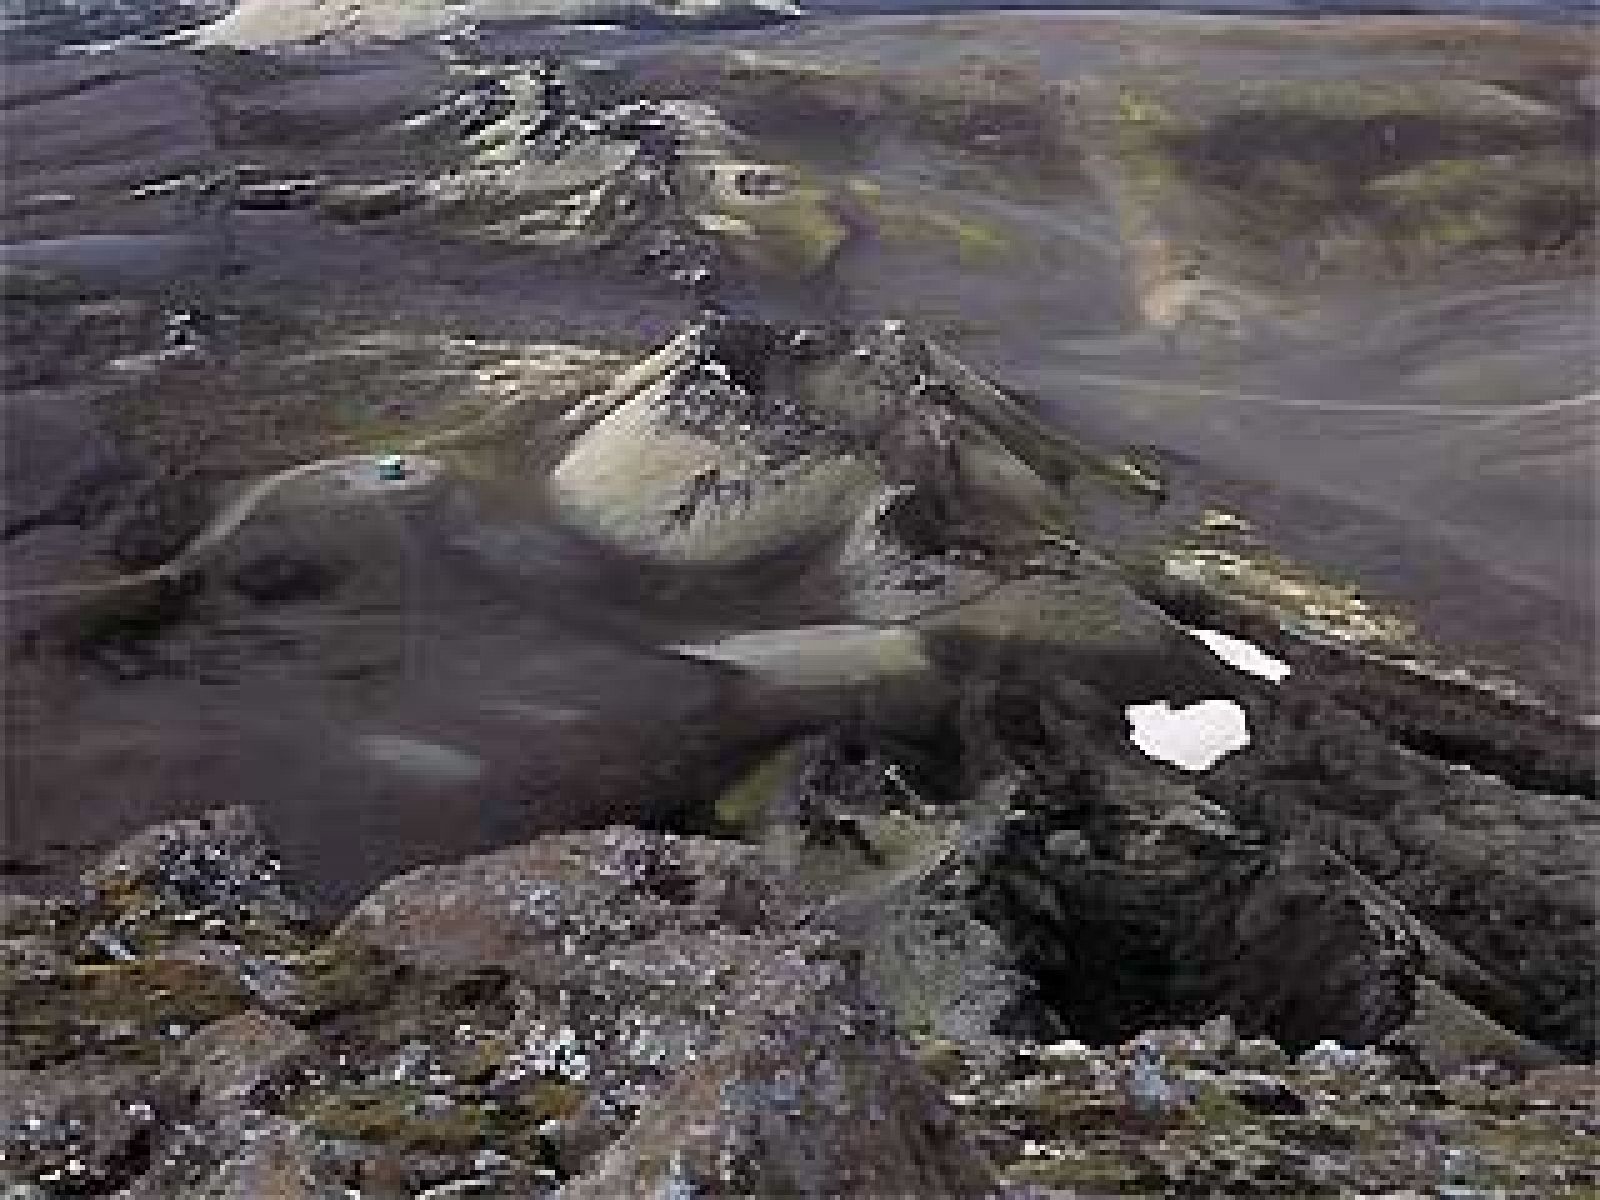 En las lunas heladas de nuestro sistema solar los volcanes no expulsan lava, sino hielo. Así lo revela un mapa tridimensional realizado gracias a los datos recogidos por la sonda Cassini, que fue lanzada en 2004 para estudiar el planeta de los anill